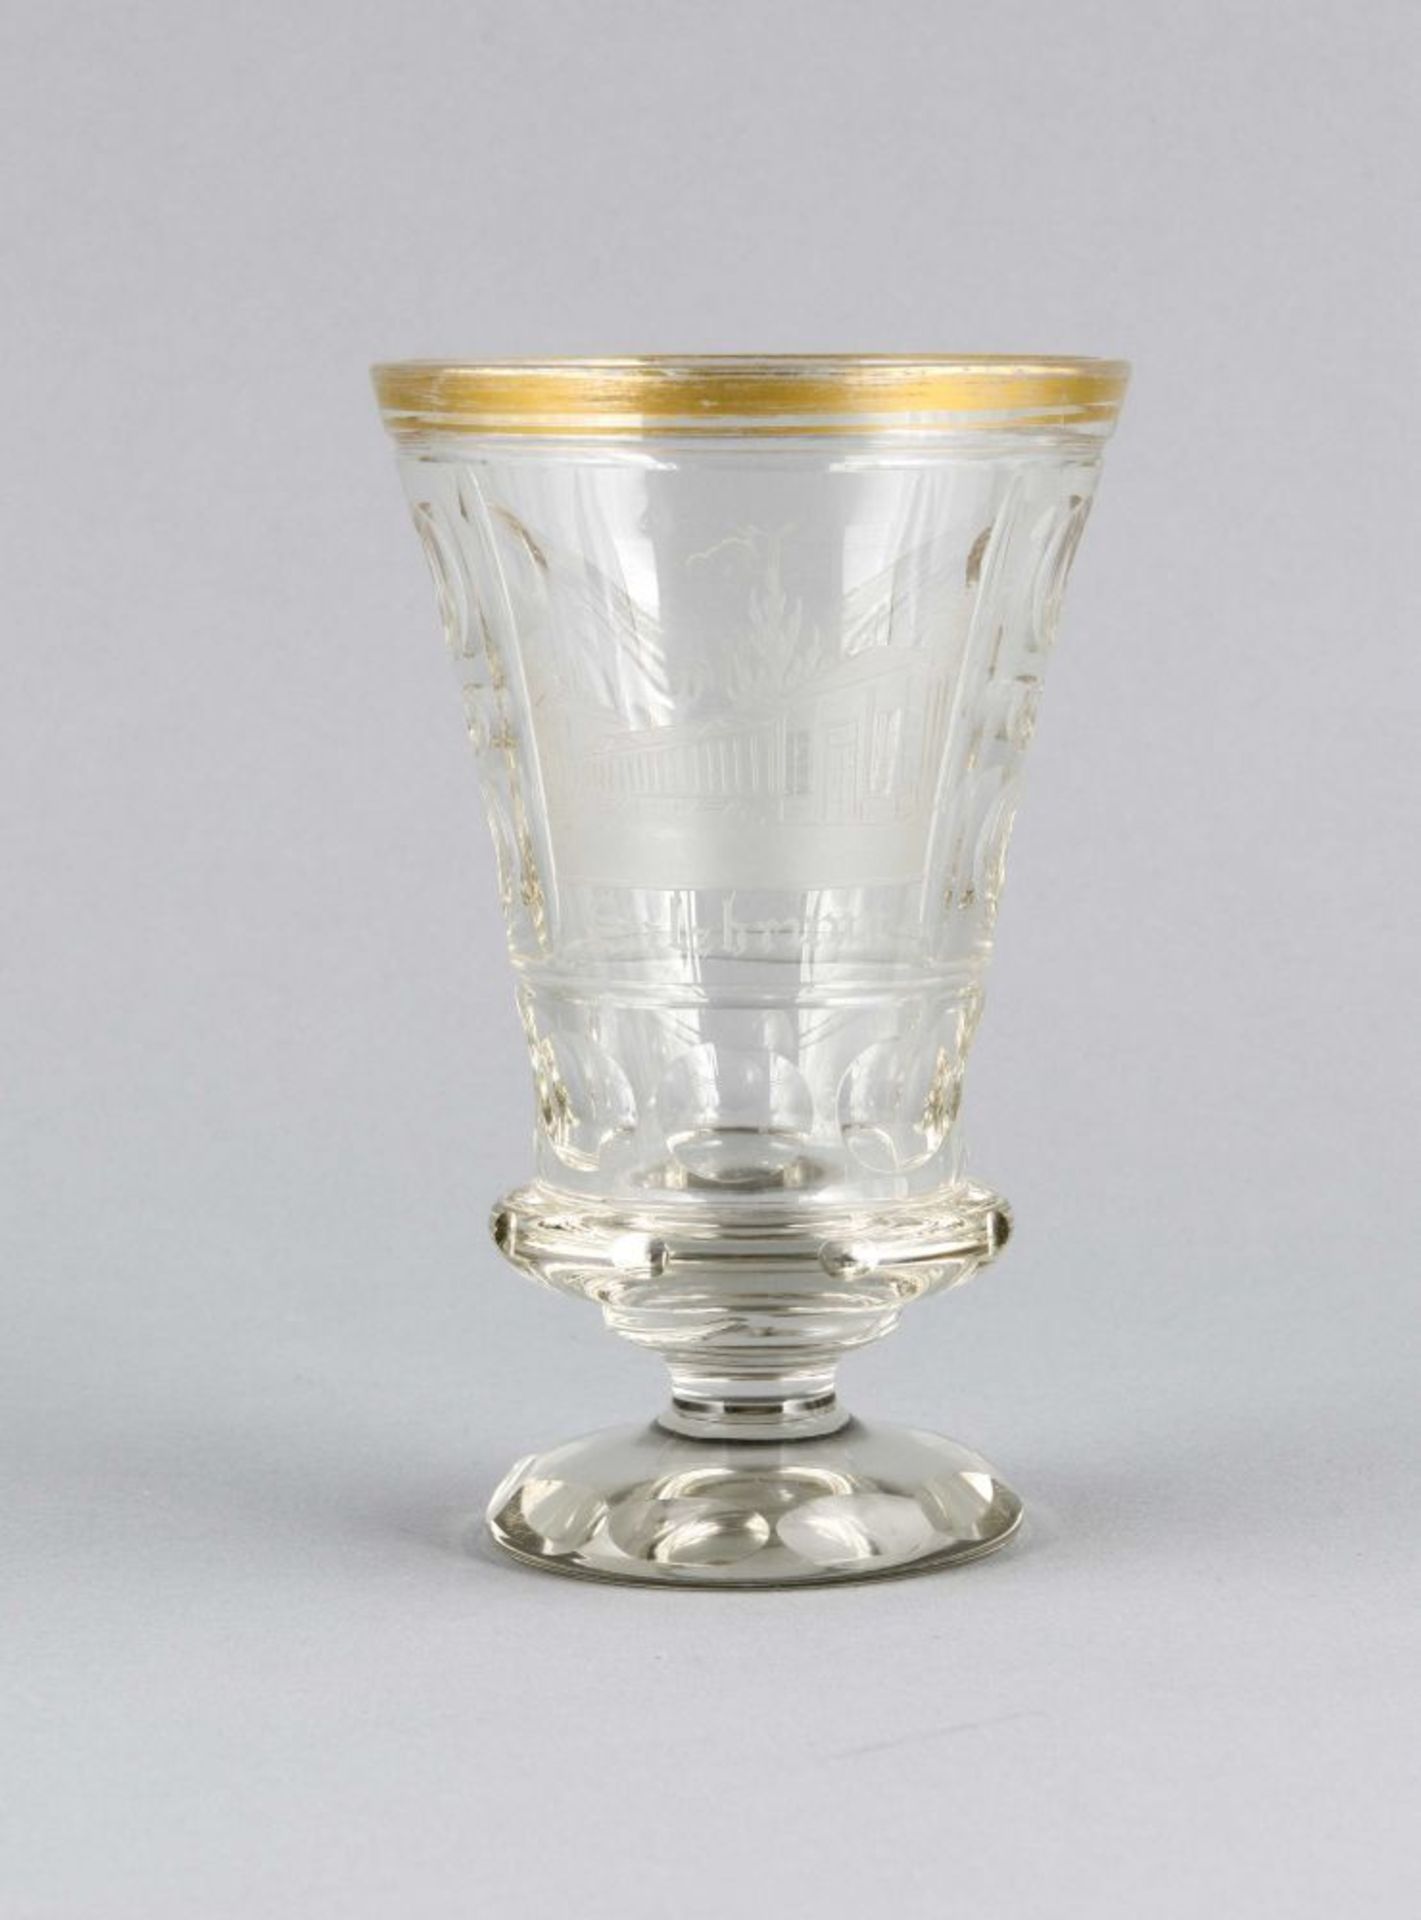 Andenkenglas, um 1900, runder Stand mit Olivenschliffdekor, kurzer Schaft konische Kuppa im